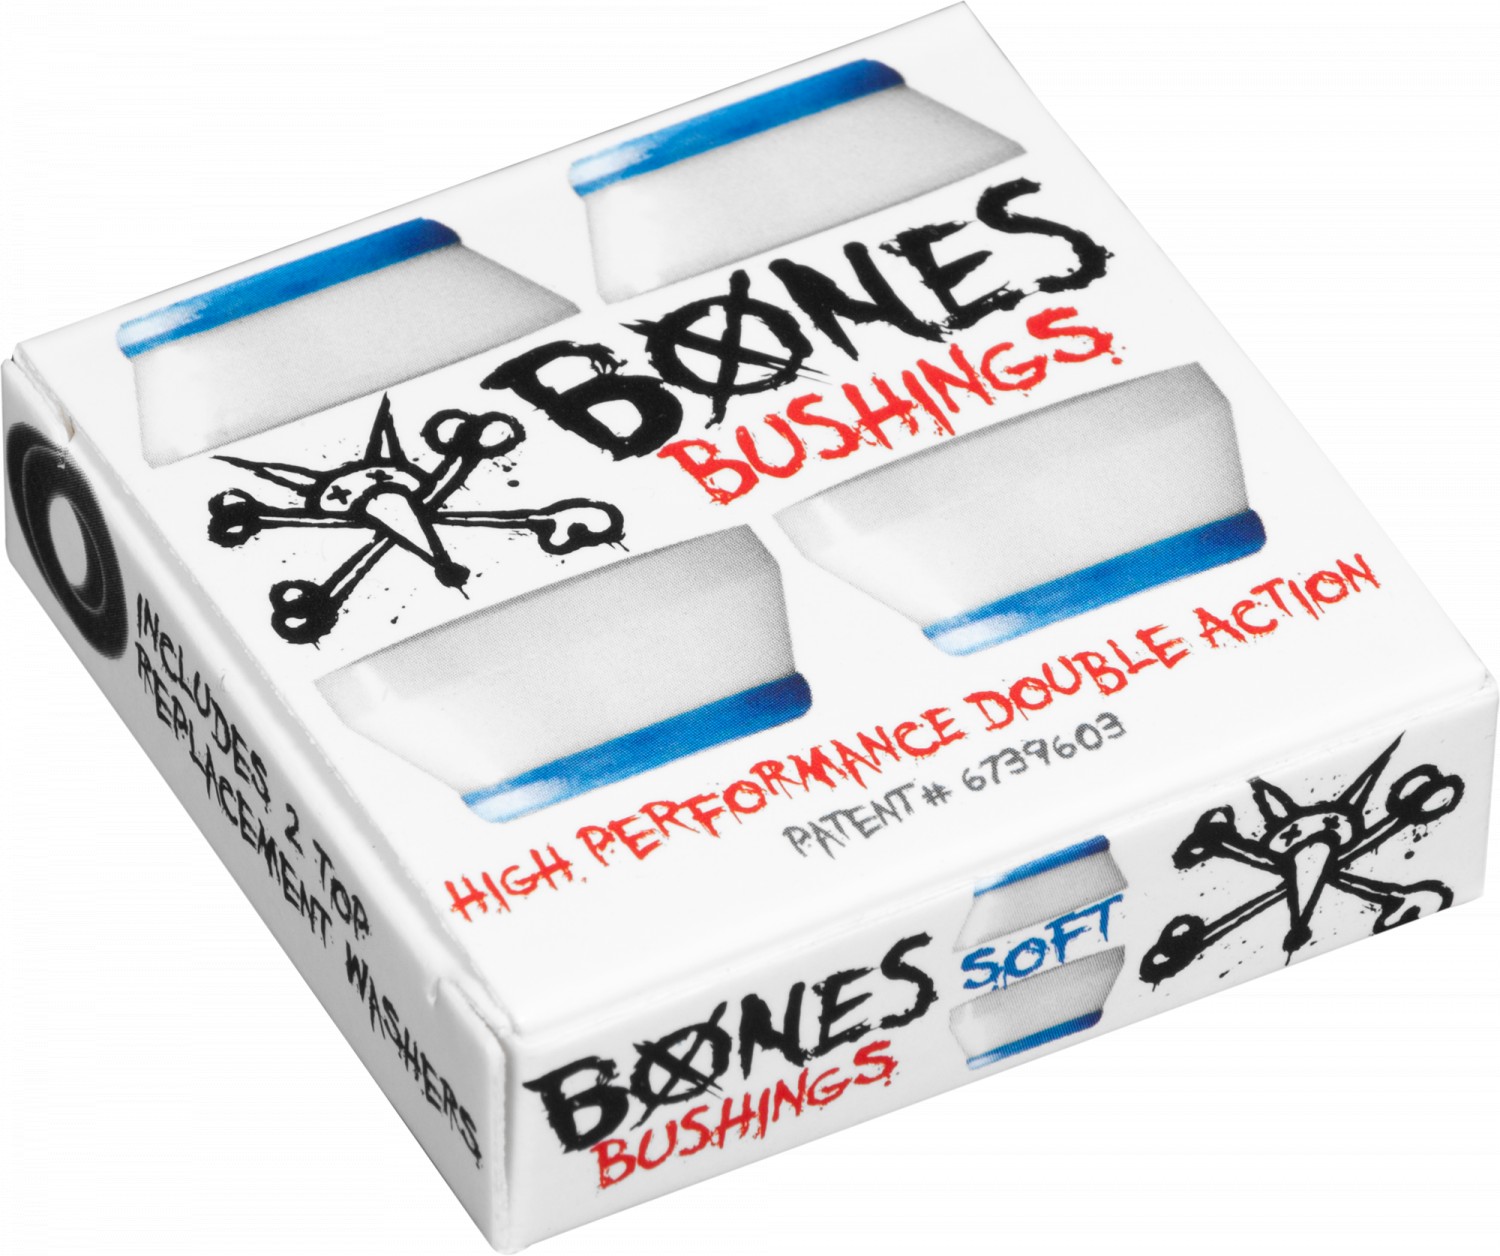 bushings BONES BUSHINGS BLUE/WHITE SOFT